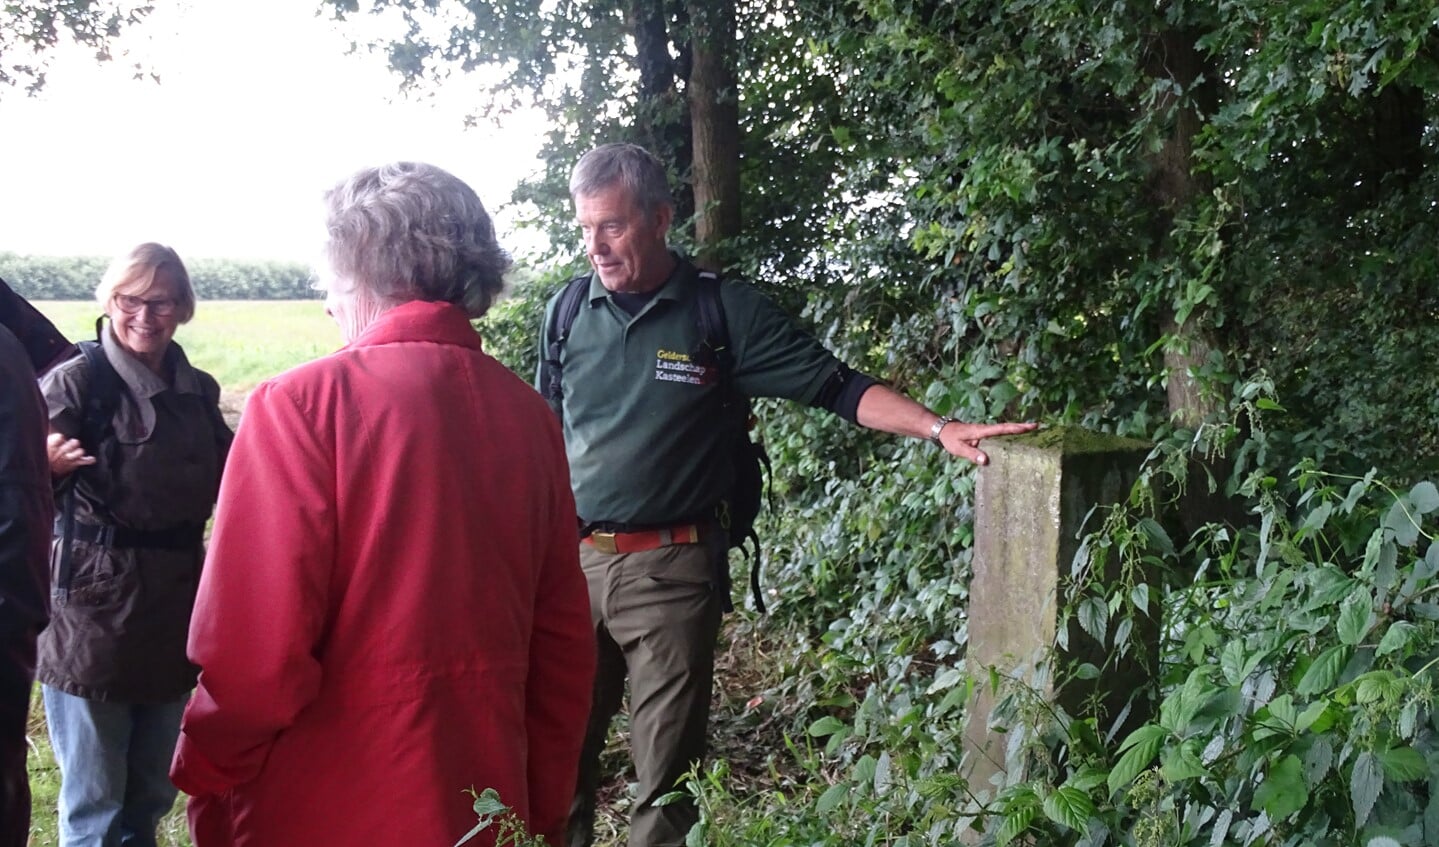 De boswachter geeft uitleg tijdens de excursie op het landgoed van Huis Landfort. Foto: Paulne Redlich